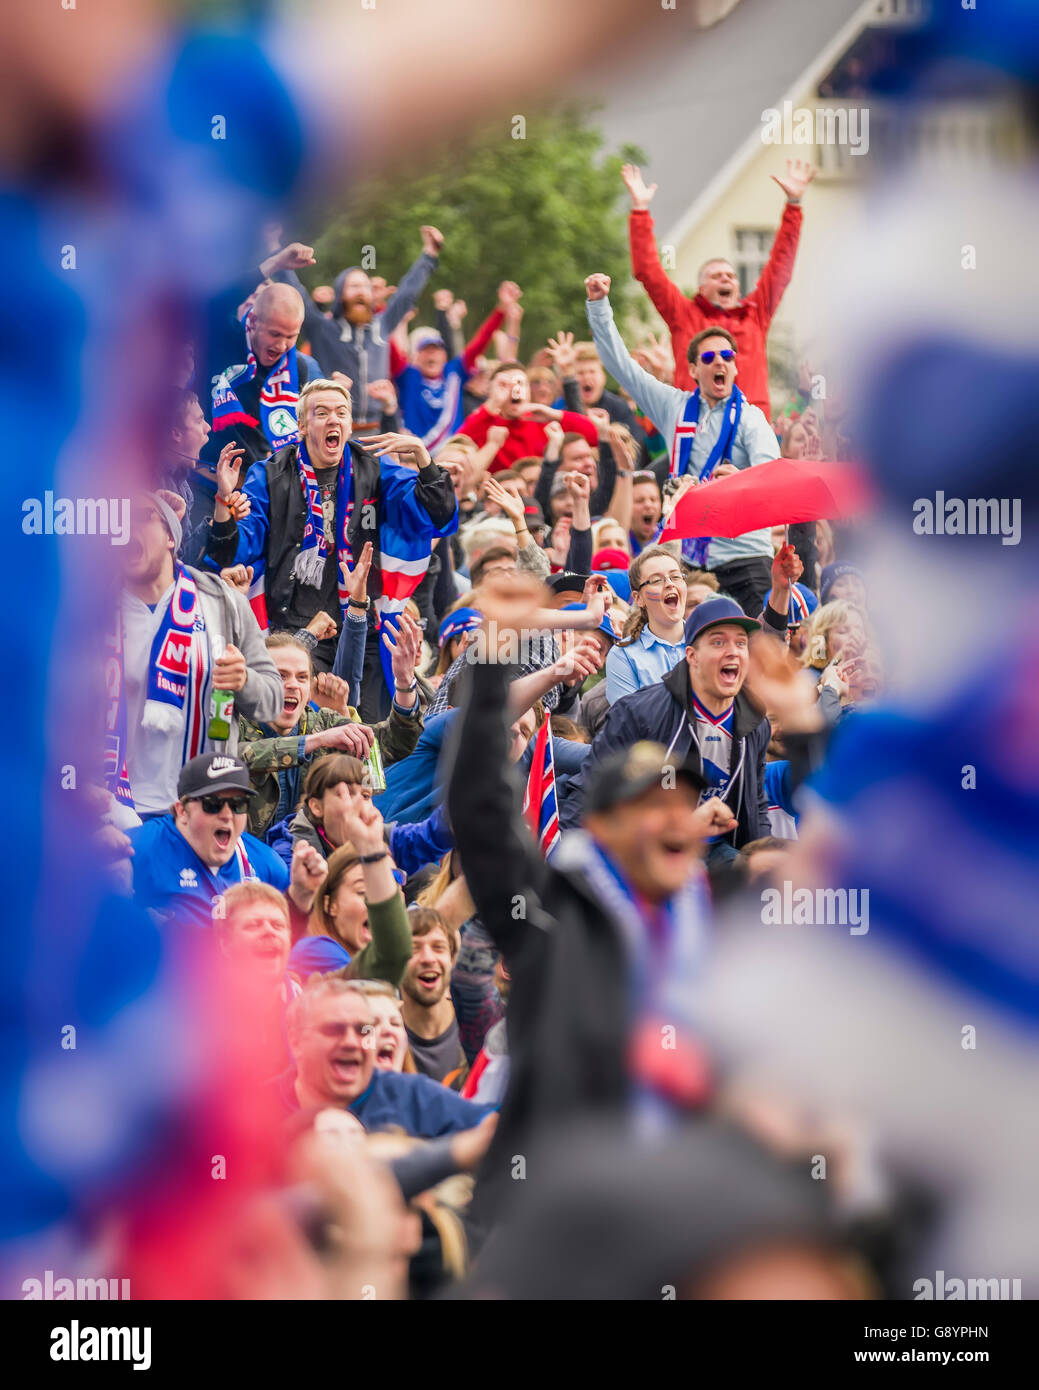 Massen in die Innenstadt von Reykjavik beobachten Island gegen England in der UEFA Euro 2016-Fußball-Turnier, Reykjavik, Island. Island 2: 1 gewonnen. 27. Juni 2016 Stockfoto